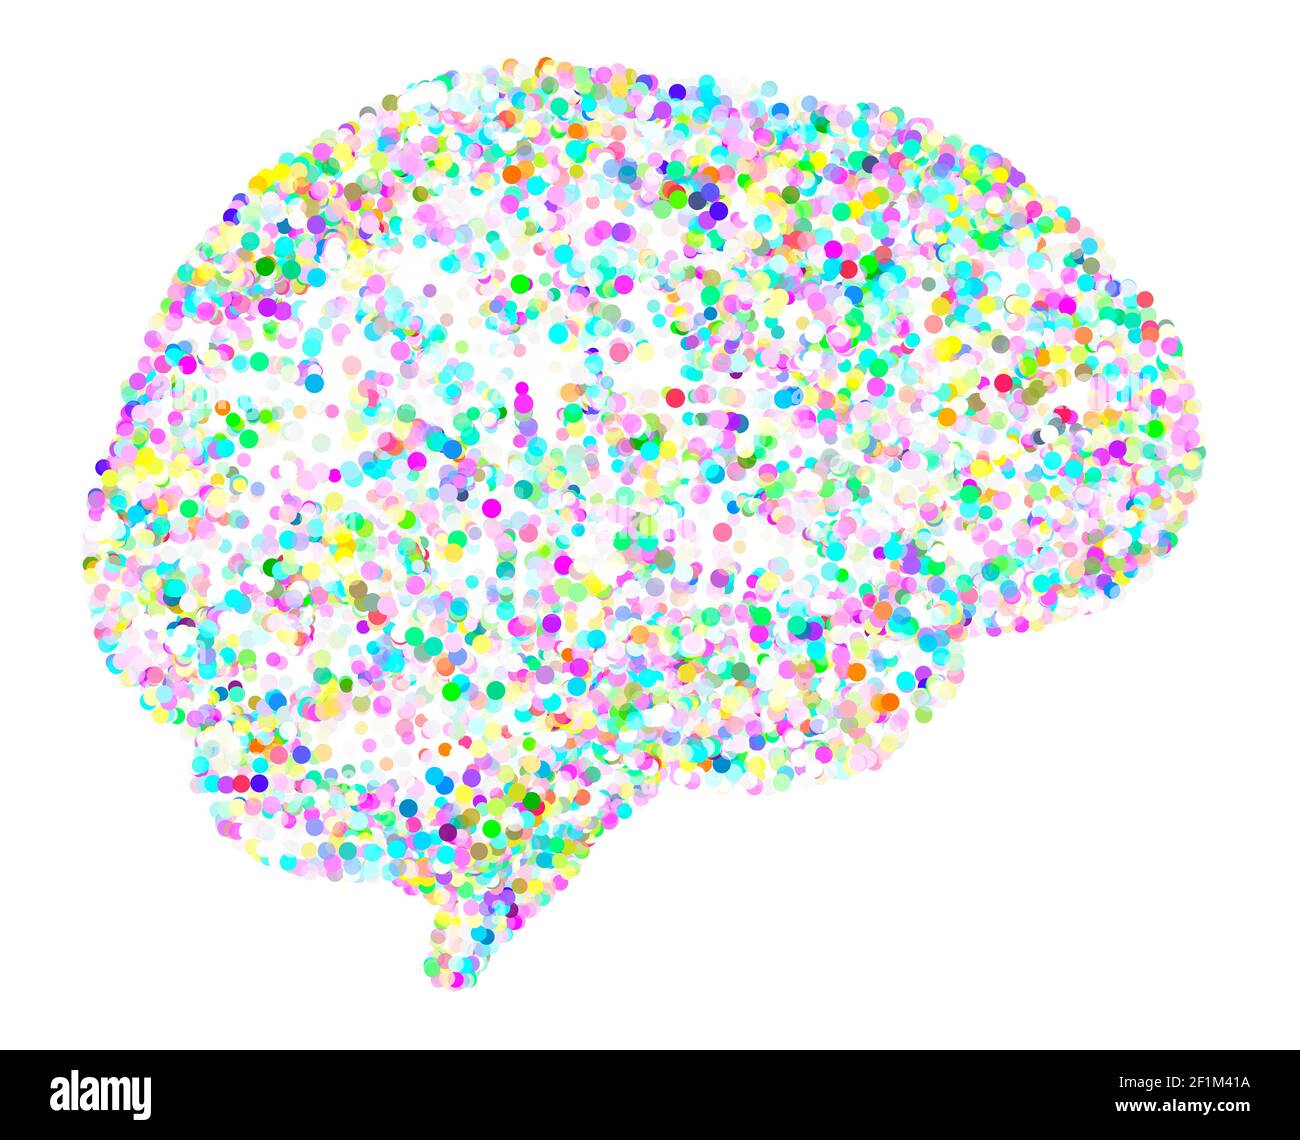 Stilisiertes Gehirn mit Punkten. Ideen und Gedanken, seien Sie kreativ. Bunte Kreise. Laterale Ansicht des Hirnorgans. Menschliche Anatomie. Partikel Stockfoto